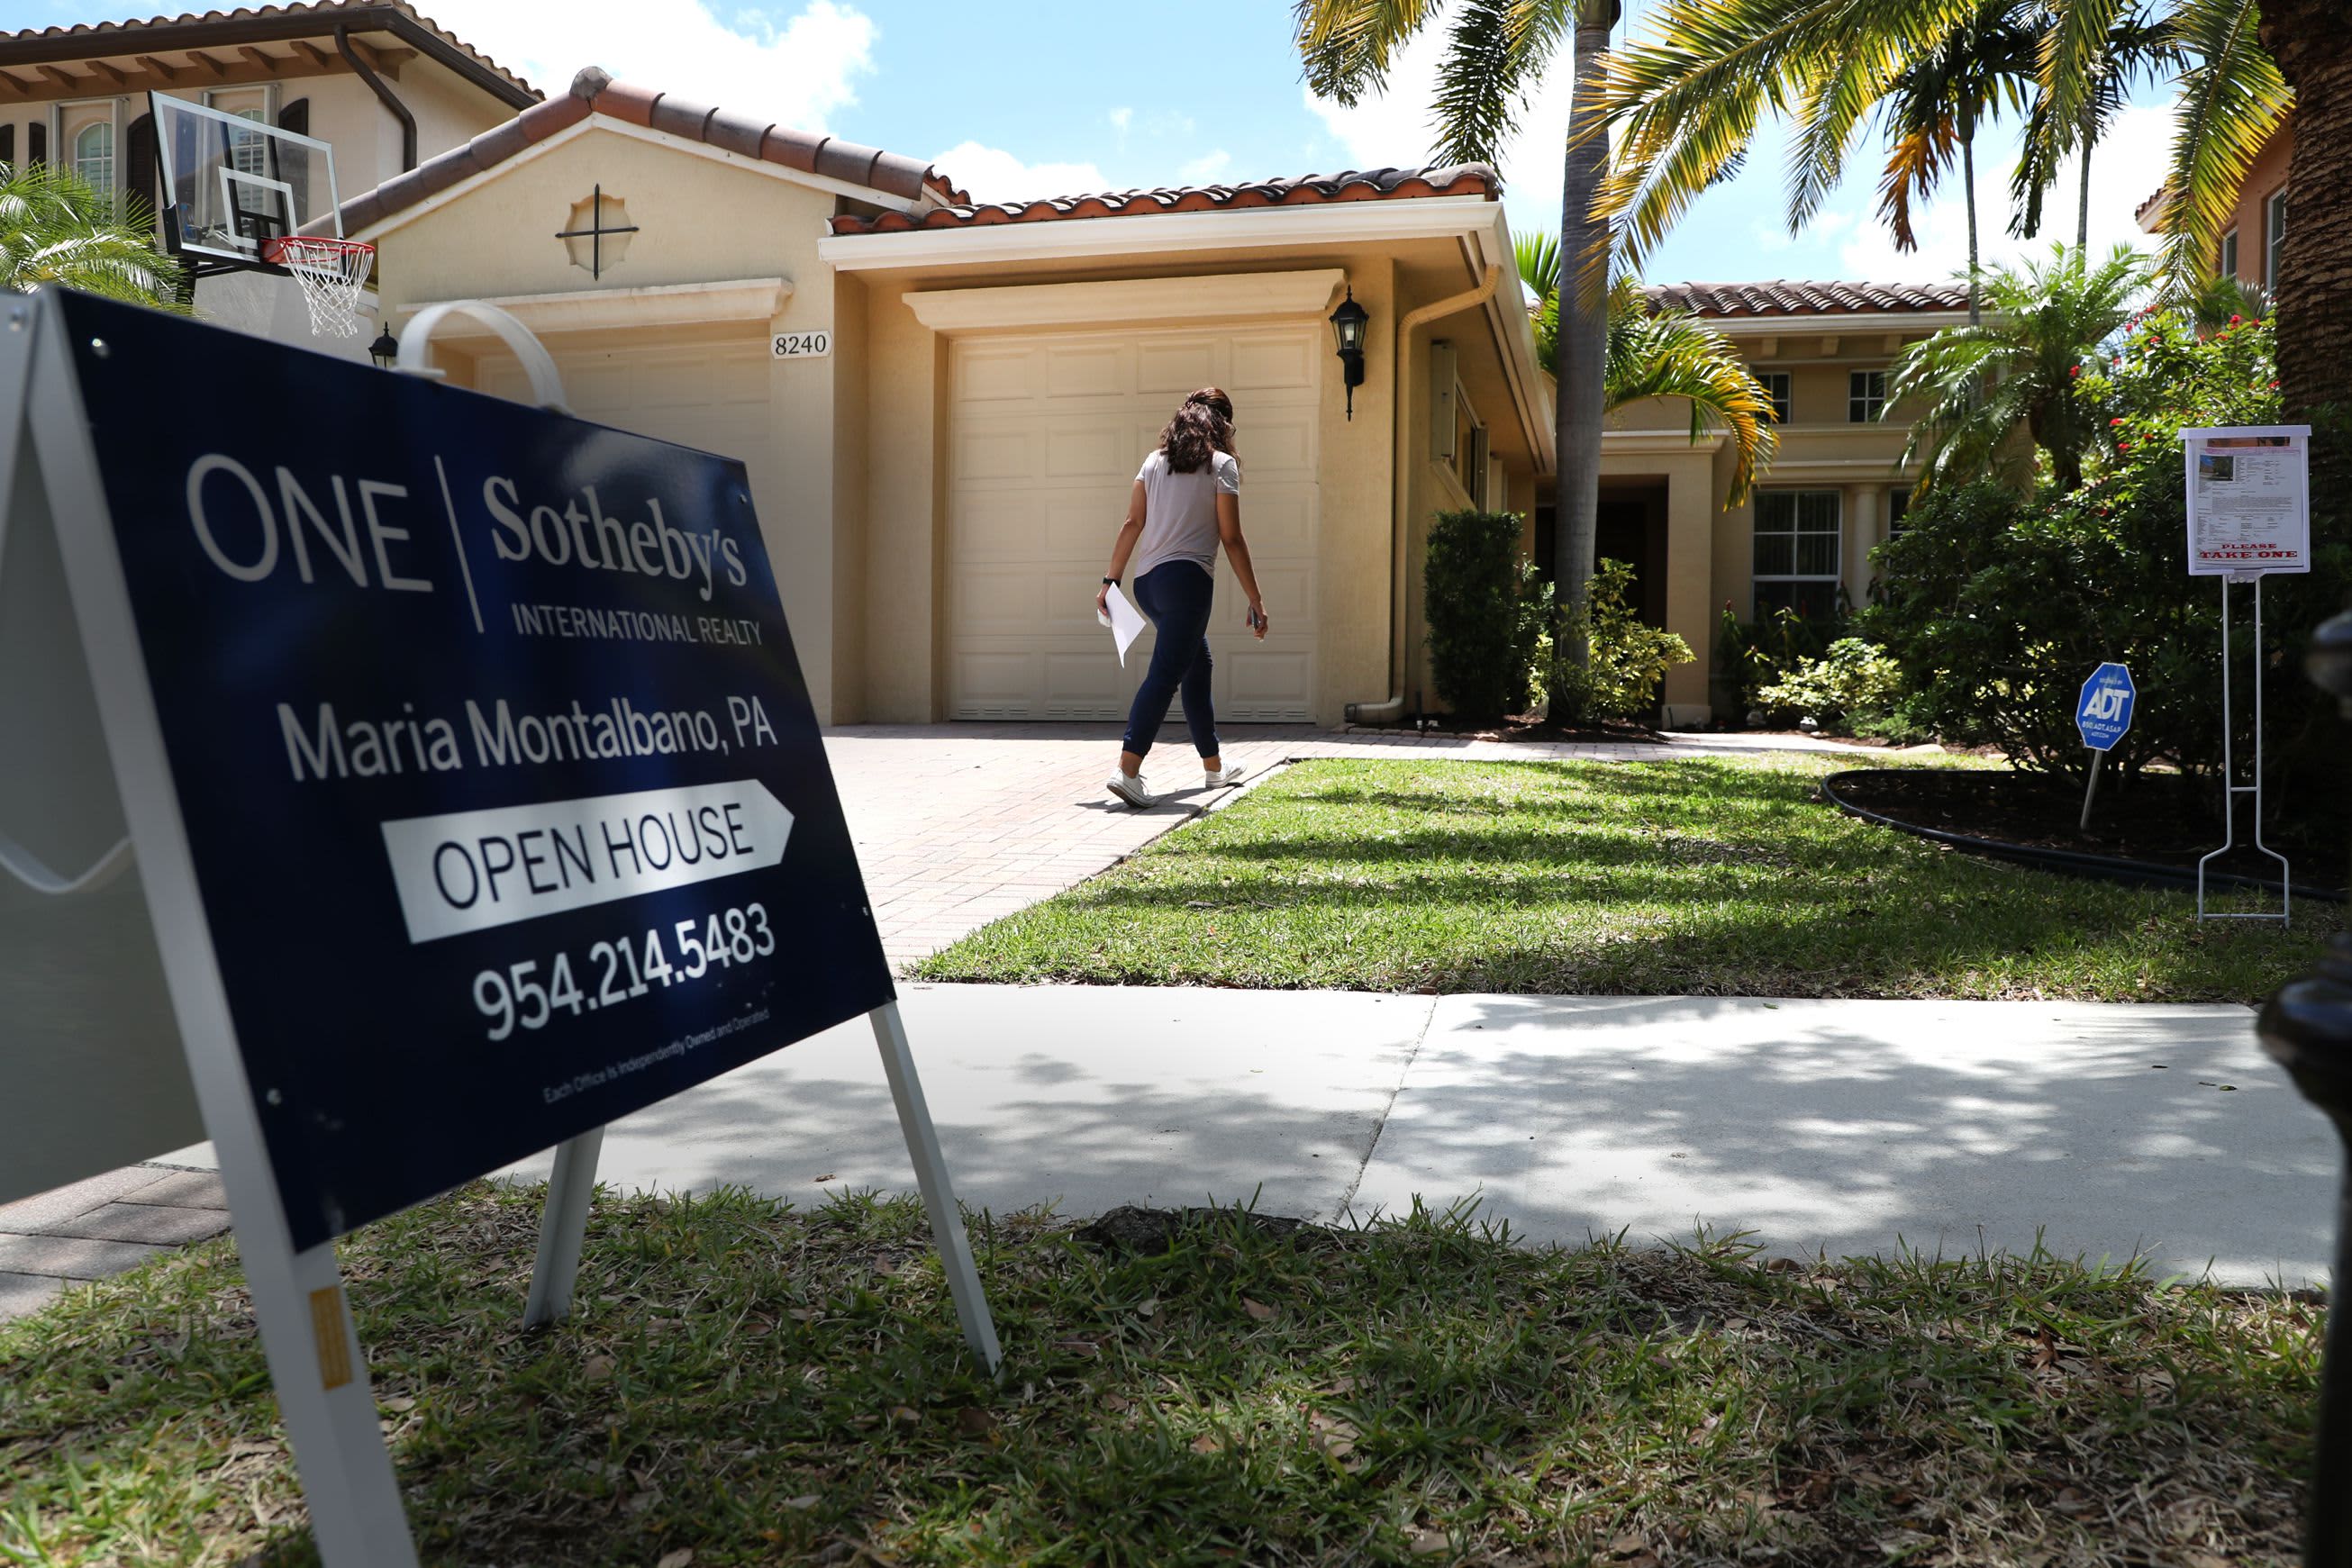 Die Hypothekennachfrage sinkt erneut, nachdem der FHA-Zinssatz den 21-Jahres-Höchststand erreicht hat